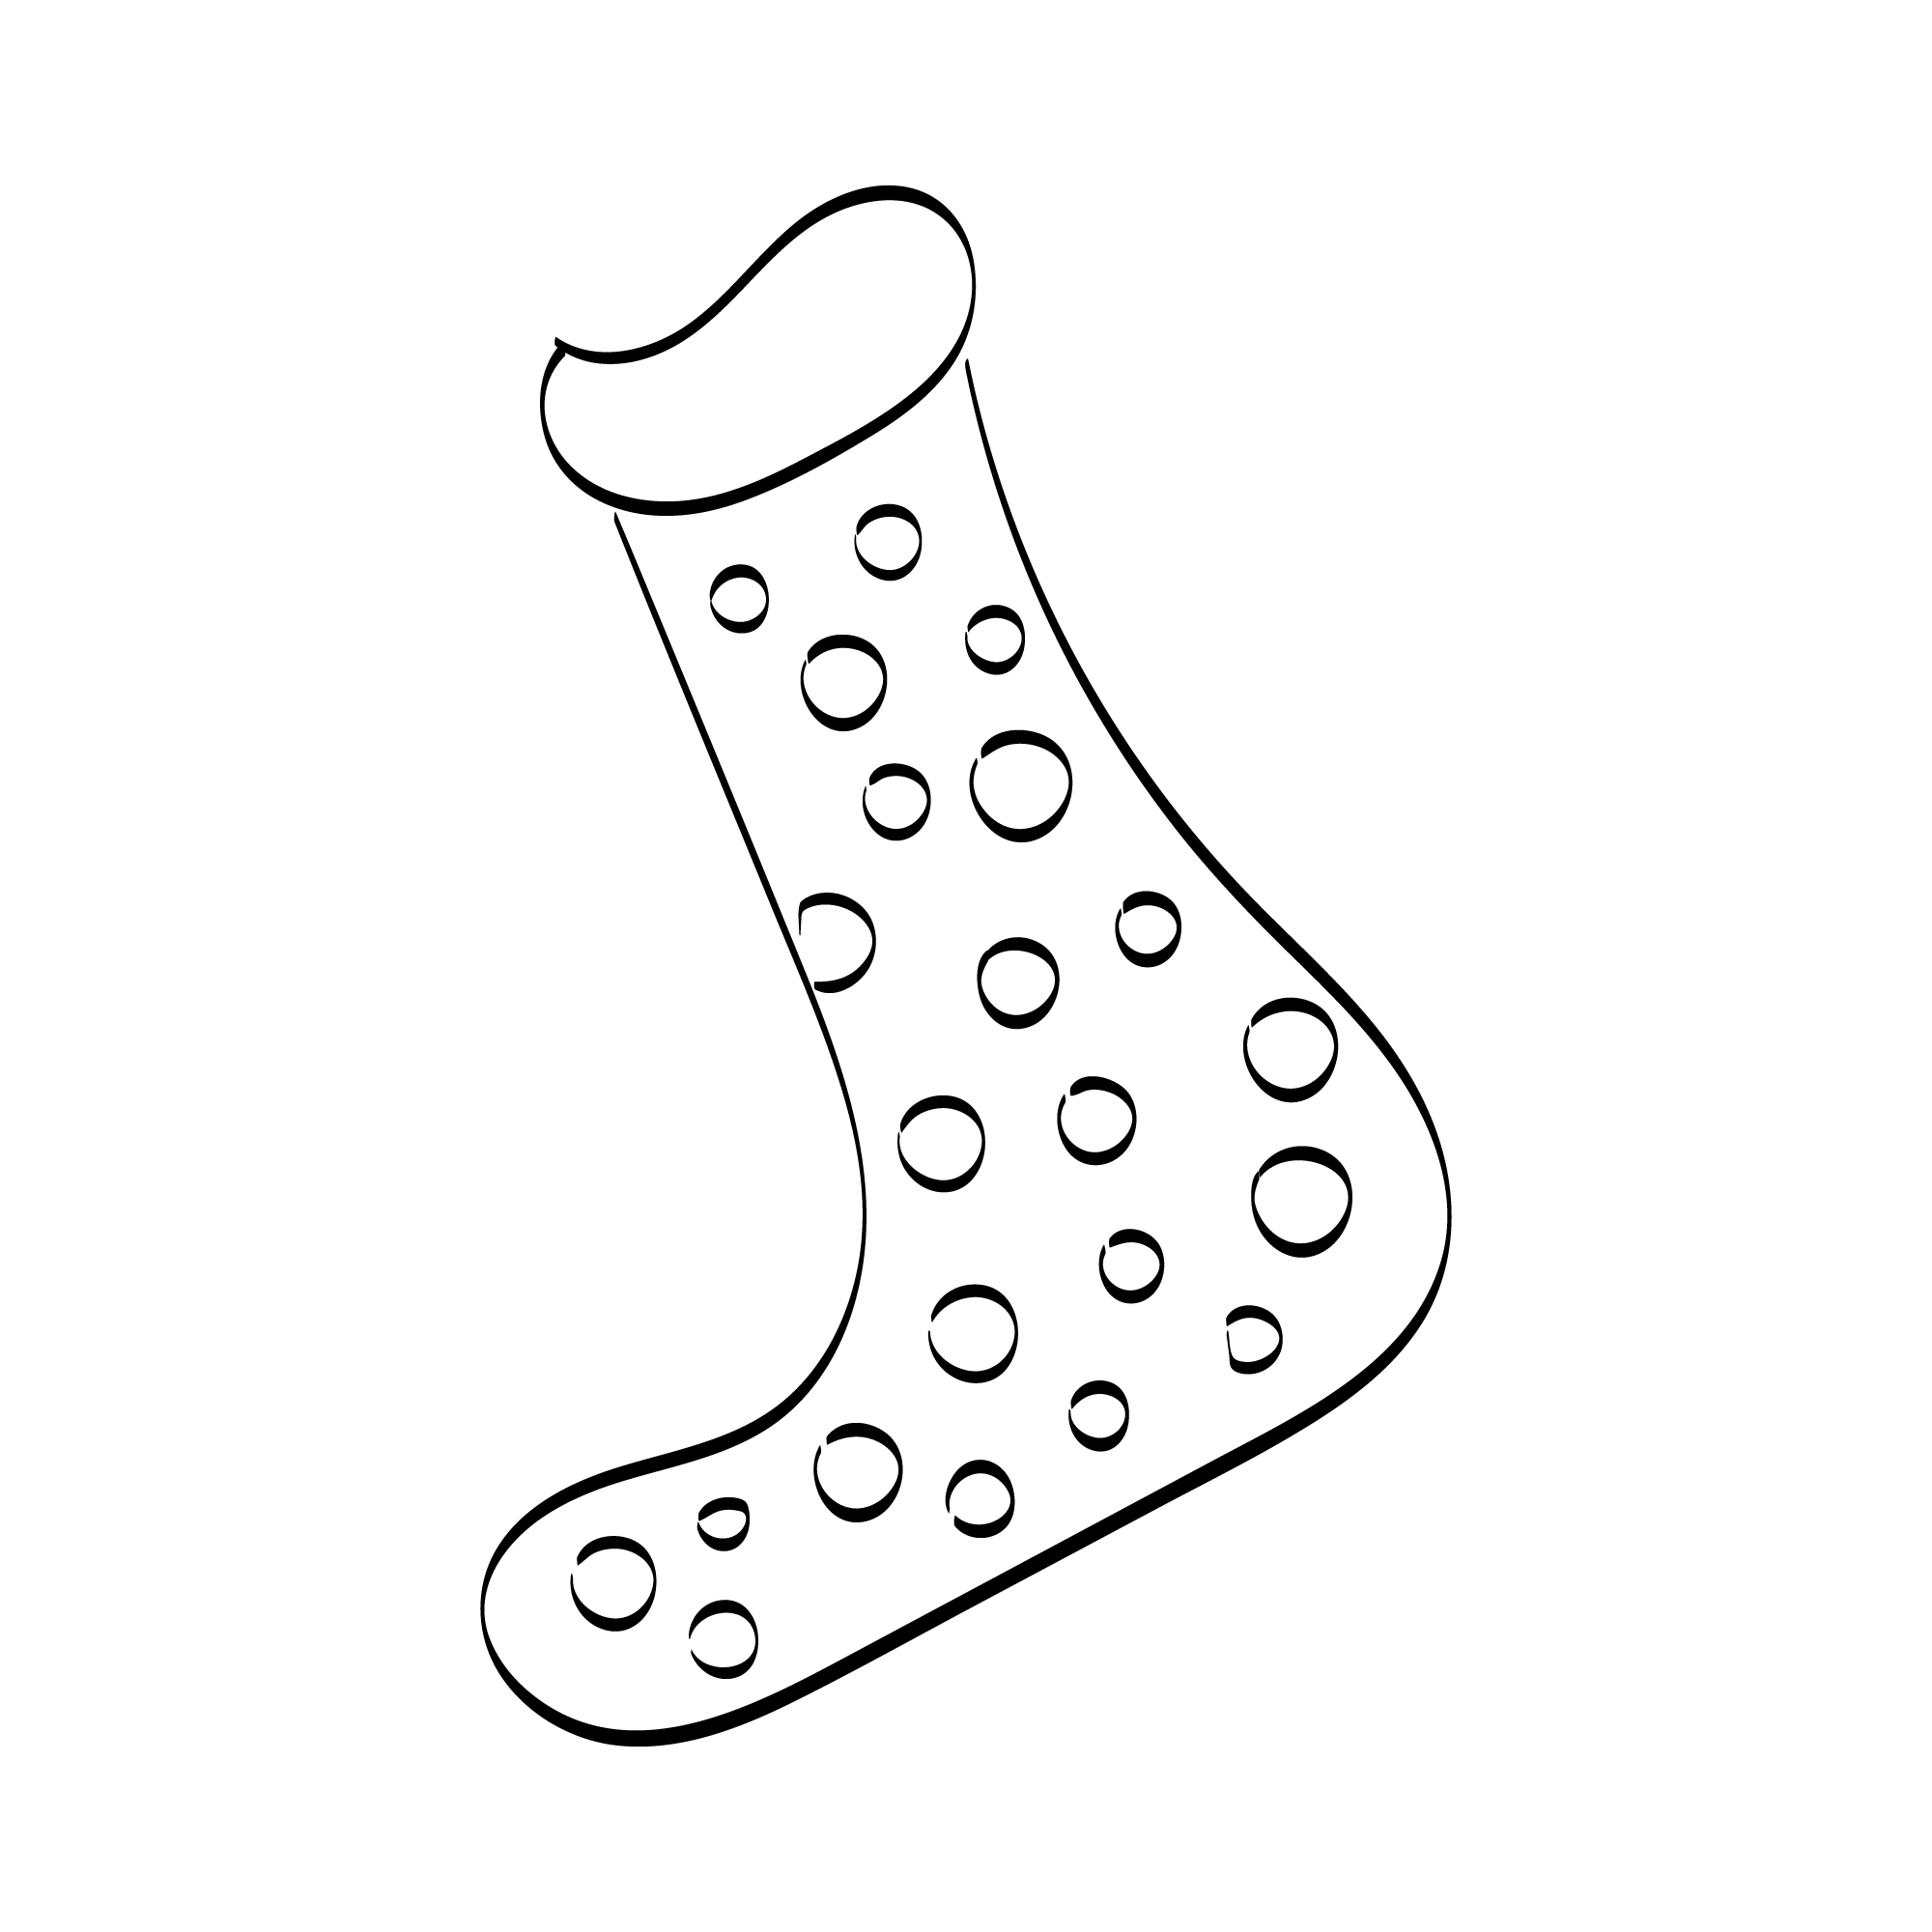 Christmas sock line art image.